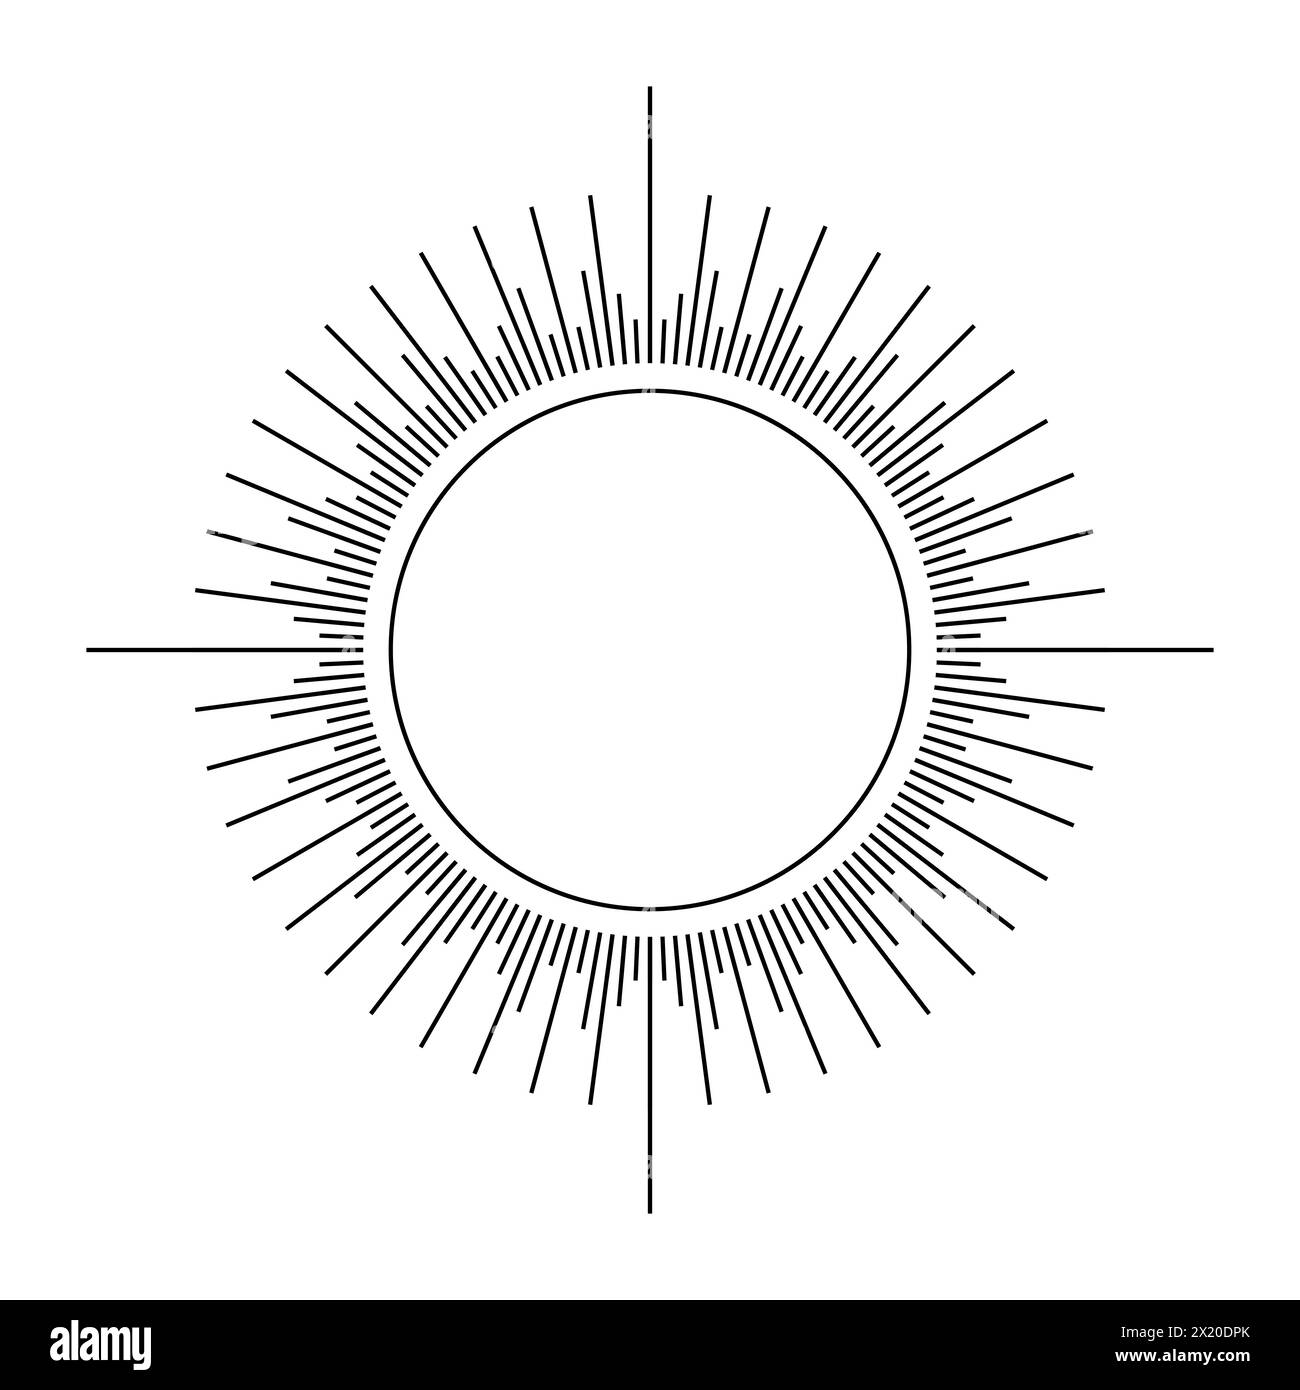 Fireworks.Vintage sunburst. Bursting sun rays. Logotype or lettering design element. Radial sunset beams. Vector illustration Stock Vector